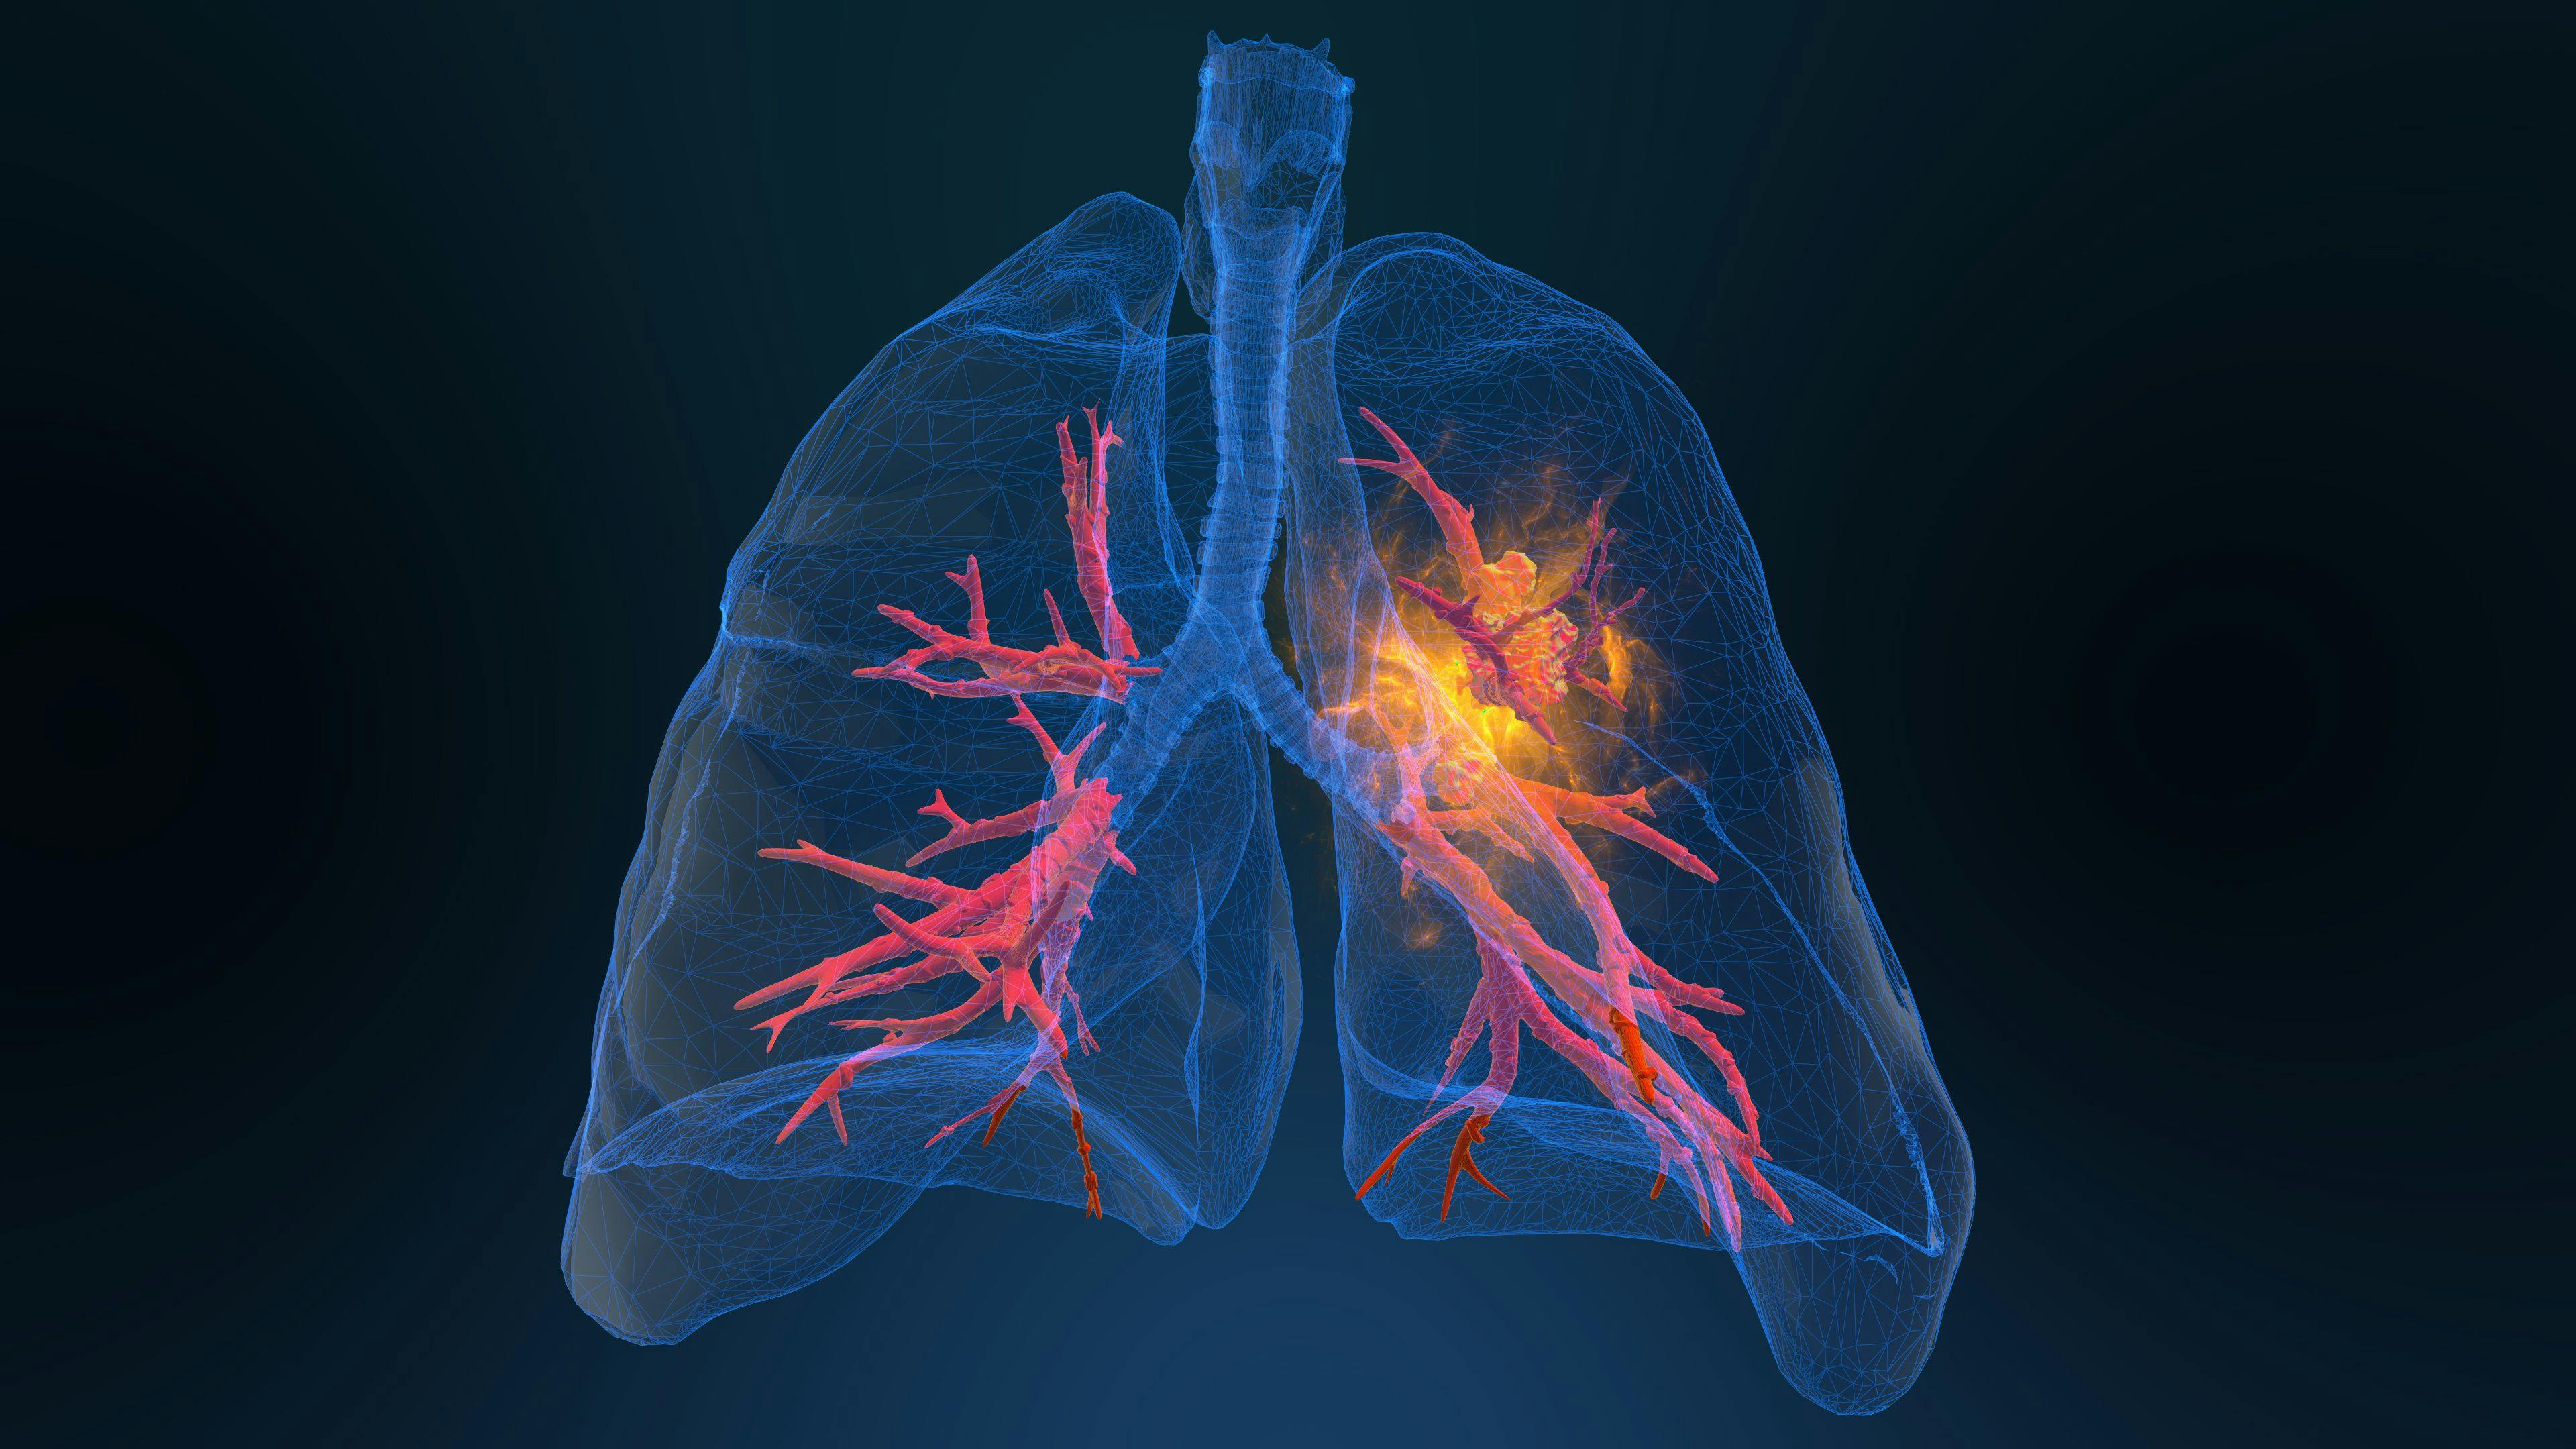 3d rendered illustration of lung cancer | Image Credit: appledesign - stock.adobe.com